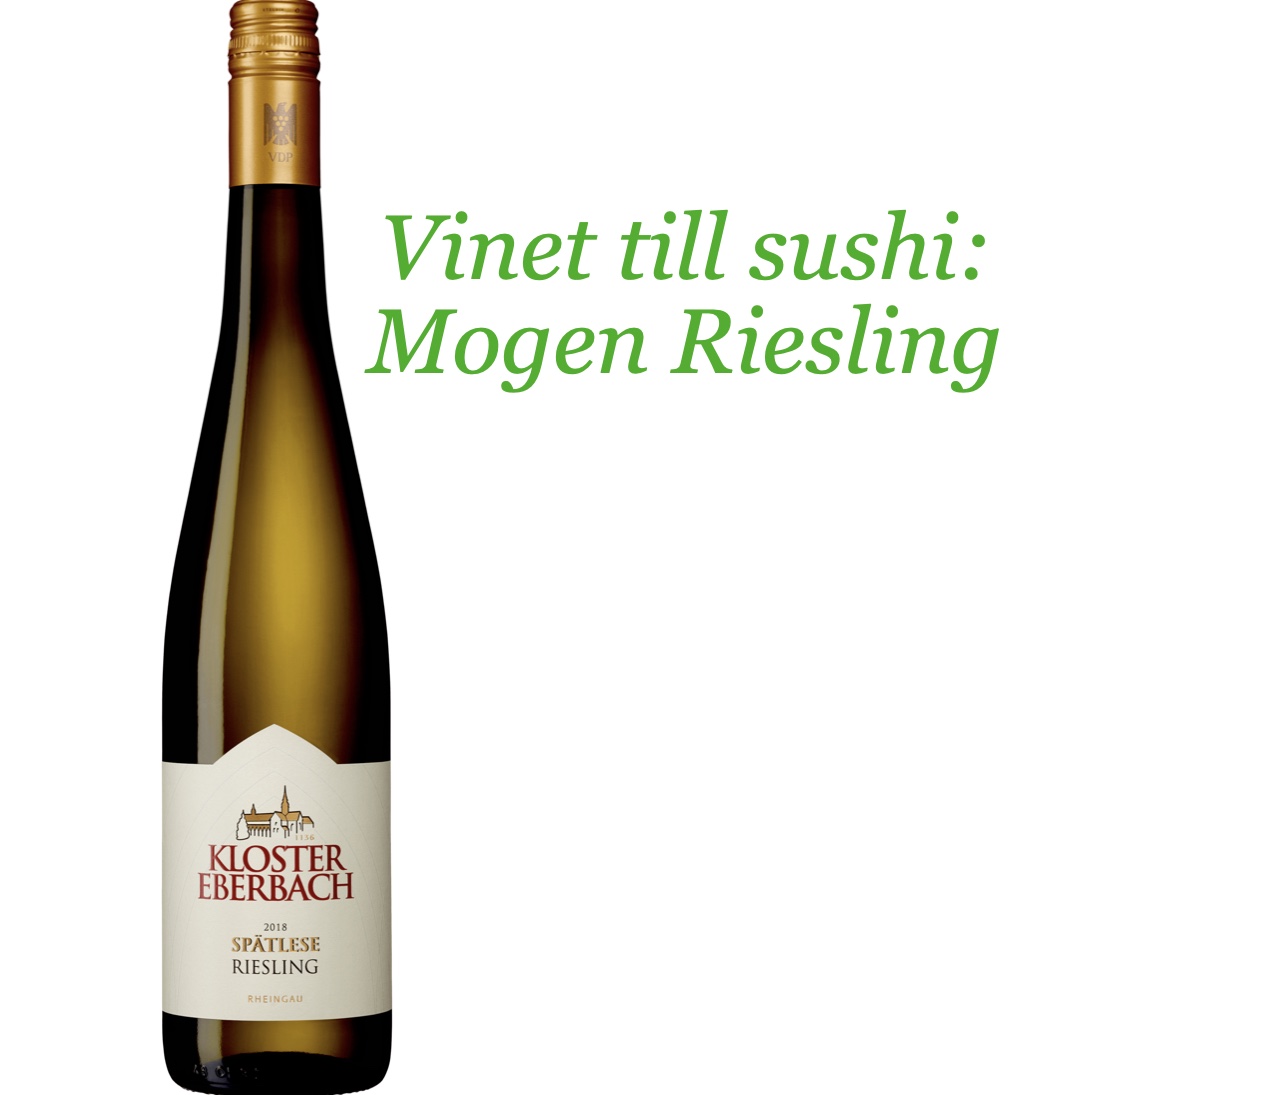 Vin till sushi: Riesling från Kloster Eberbach